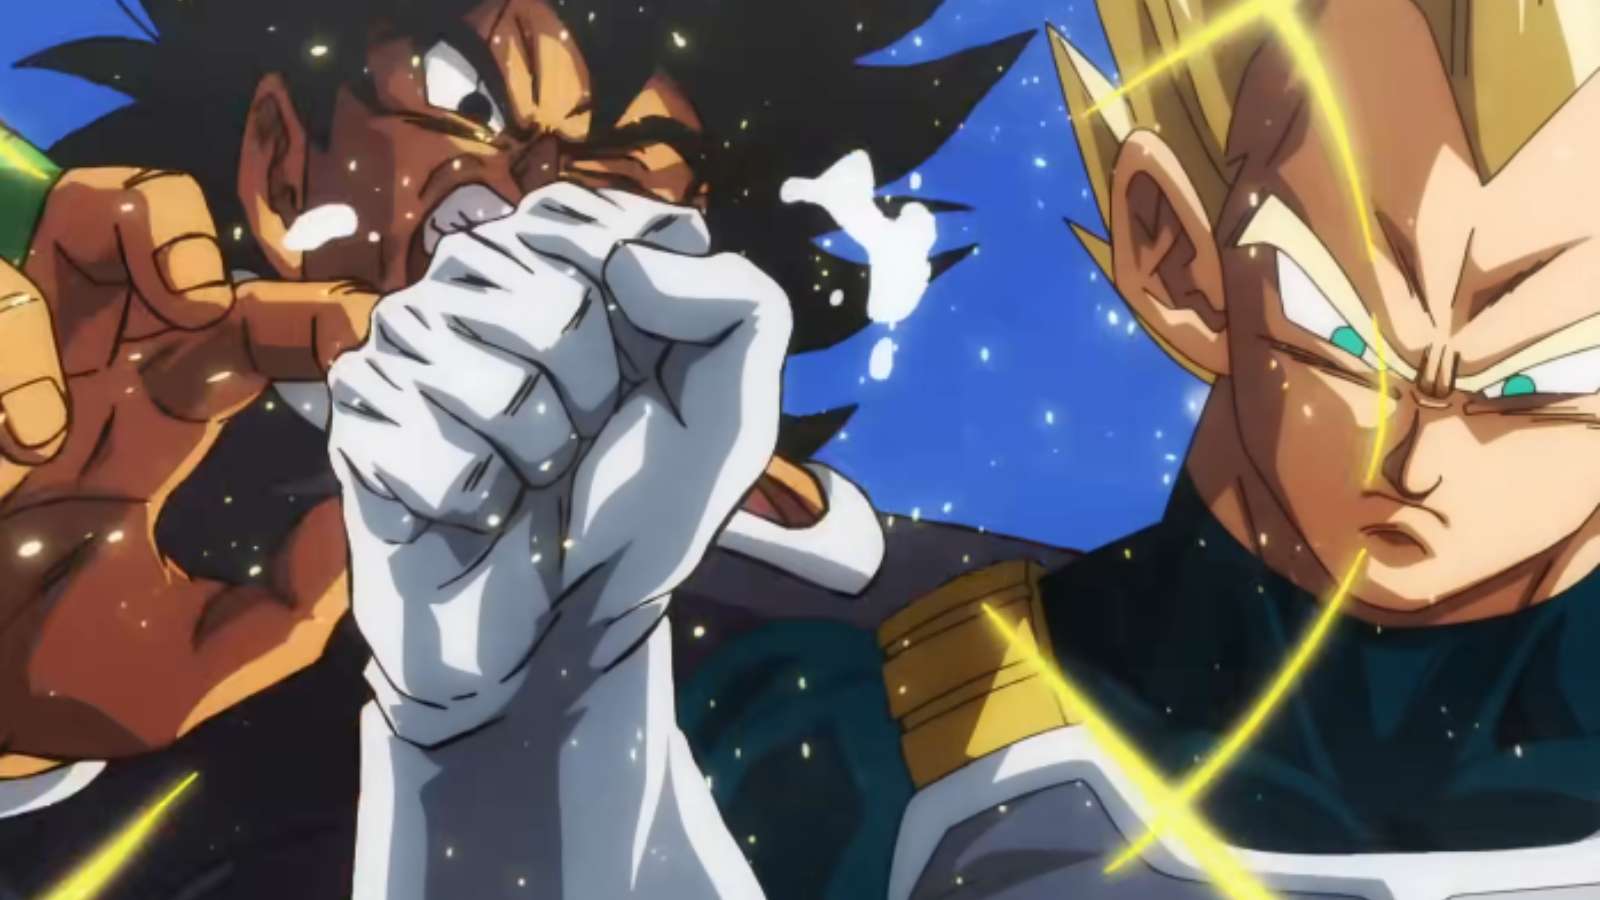 Scares Goku & Vegeta - Gohan's New Dragon Ball Super Form Earns